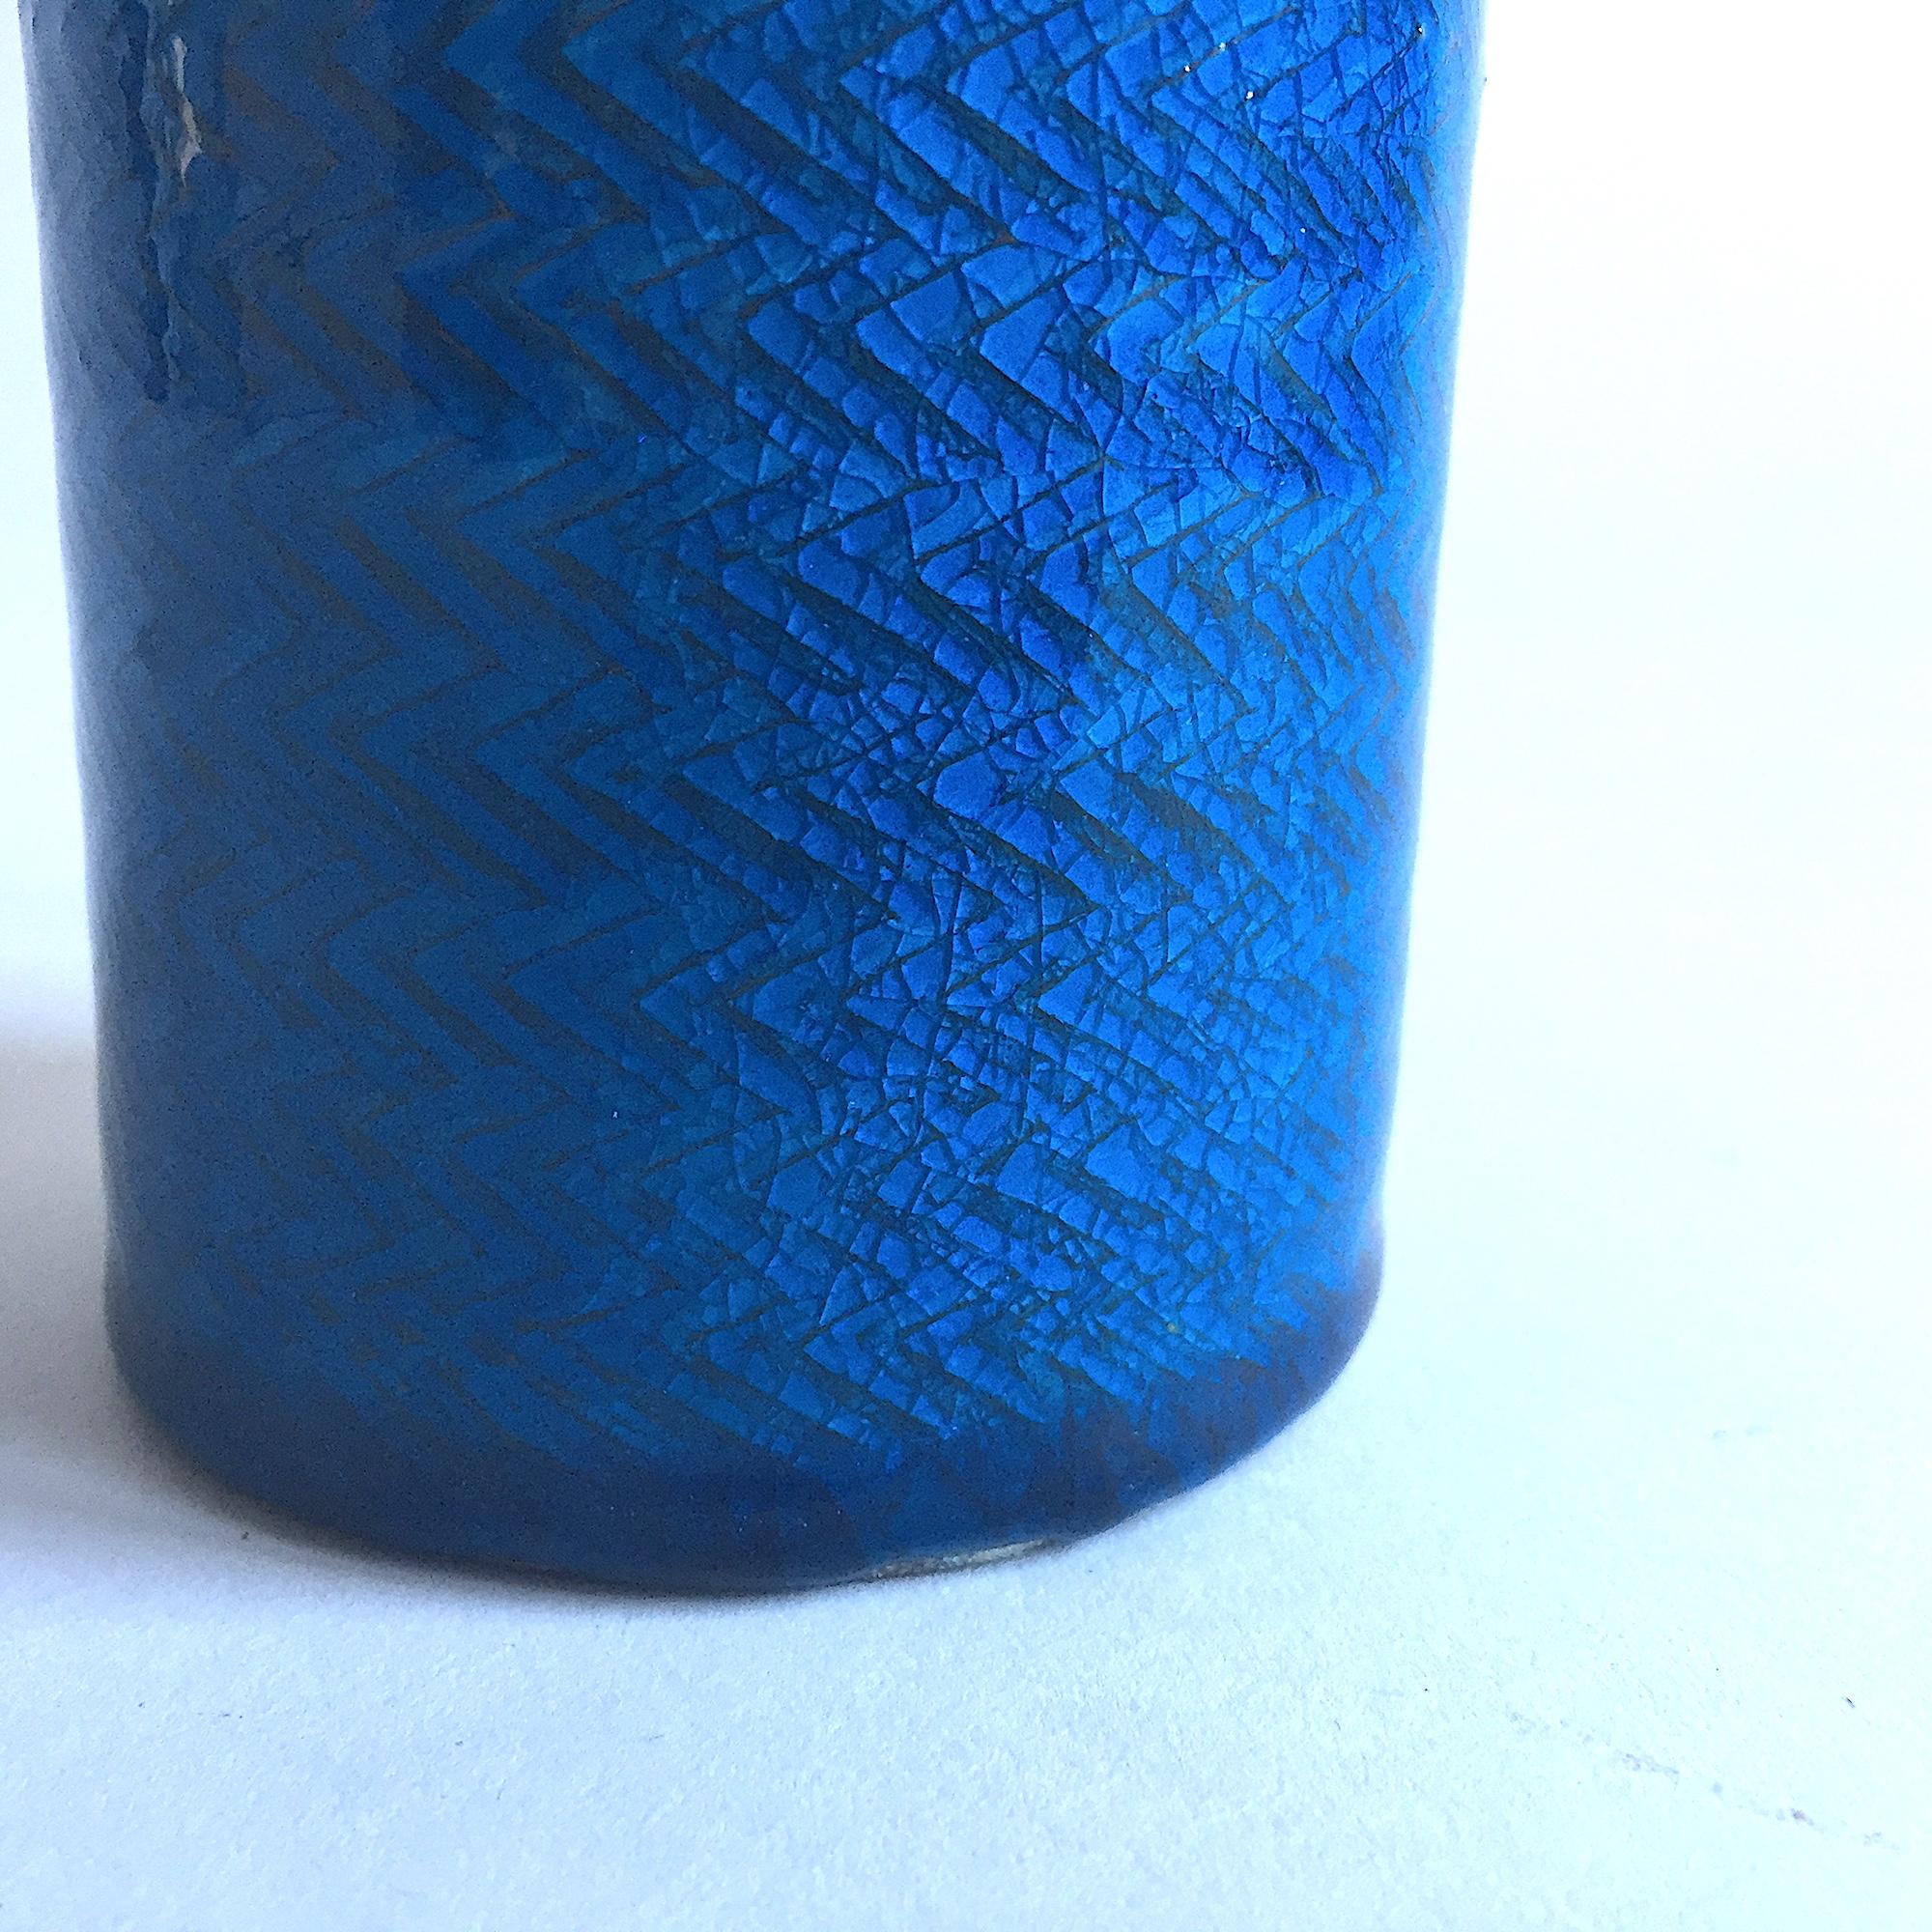 Caribbean blue glaze stoneware table vase by Nils Kahler for Hermann A. Kahler, Denmark. Ceramic. Signed. HAK–Niels, Denmark.